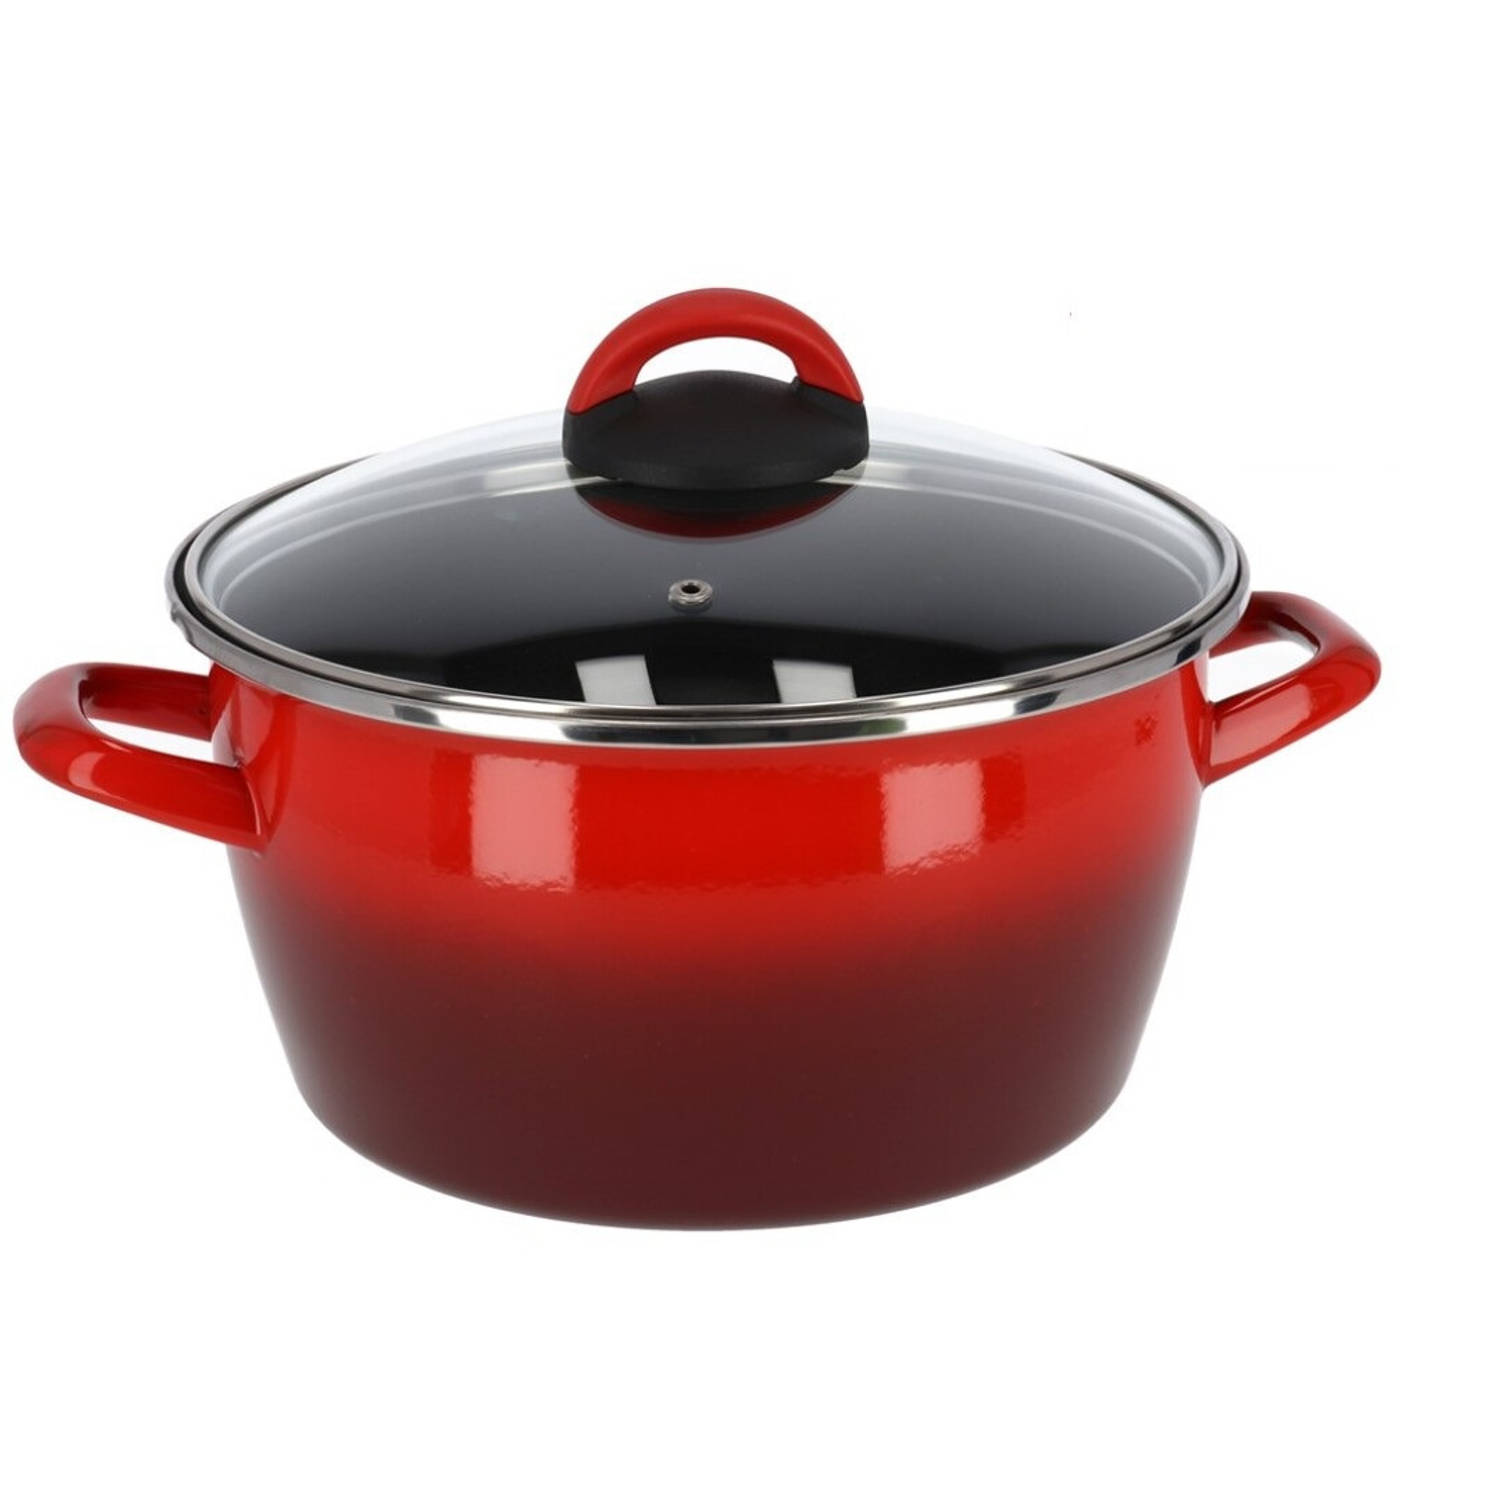 Minachting Assimileren verhouding Rvs rode kookpan/pan met glazen deksel 24 cm 10 liter - Kookpannen | Blokker